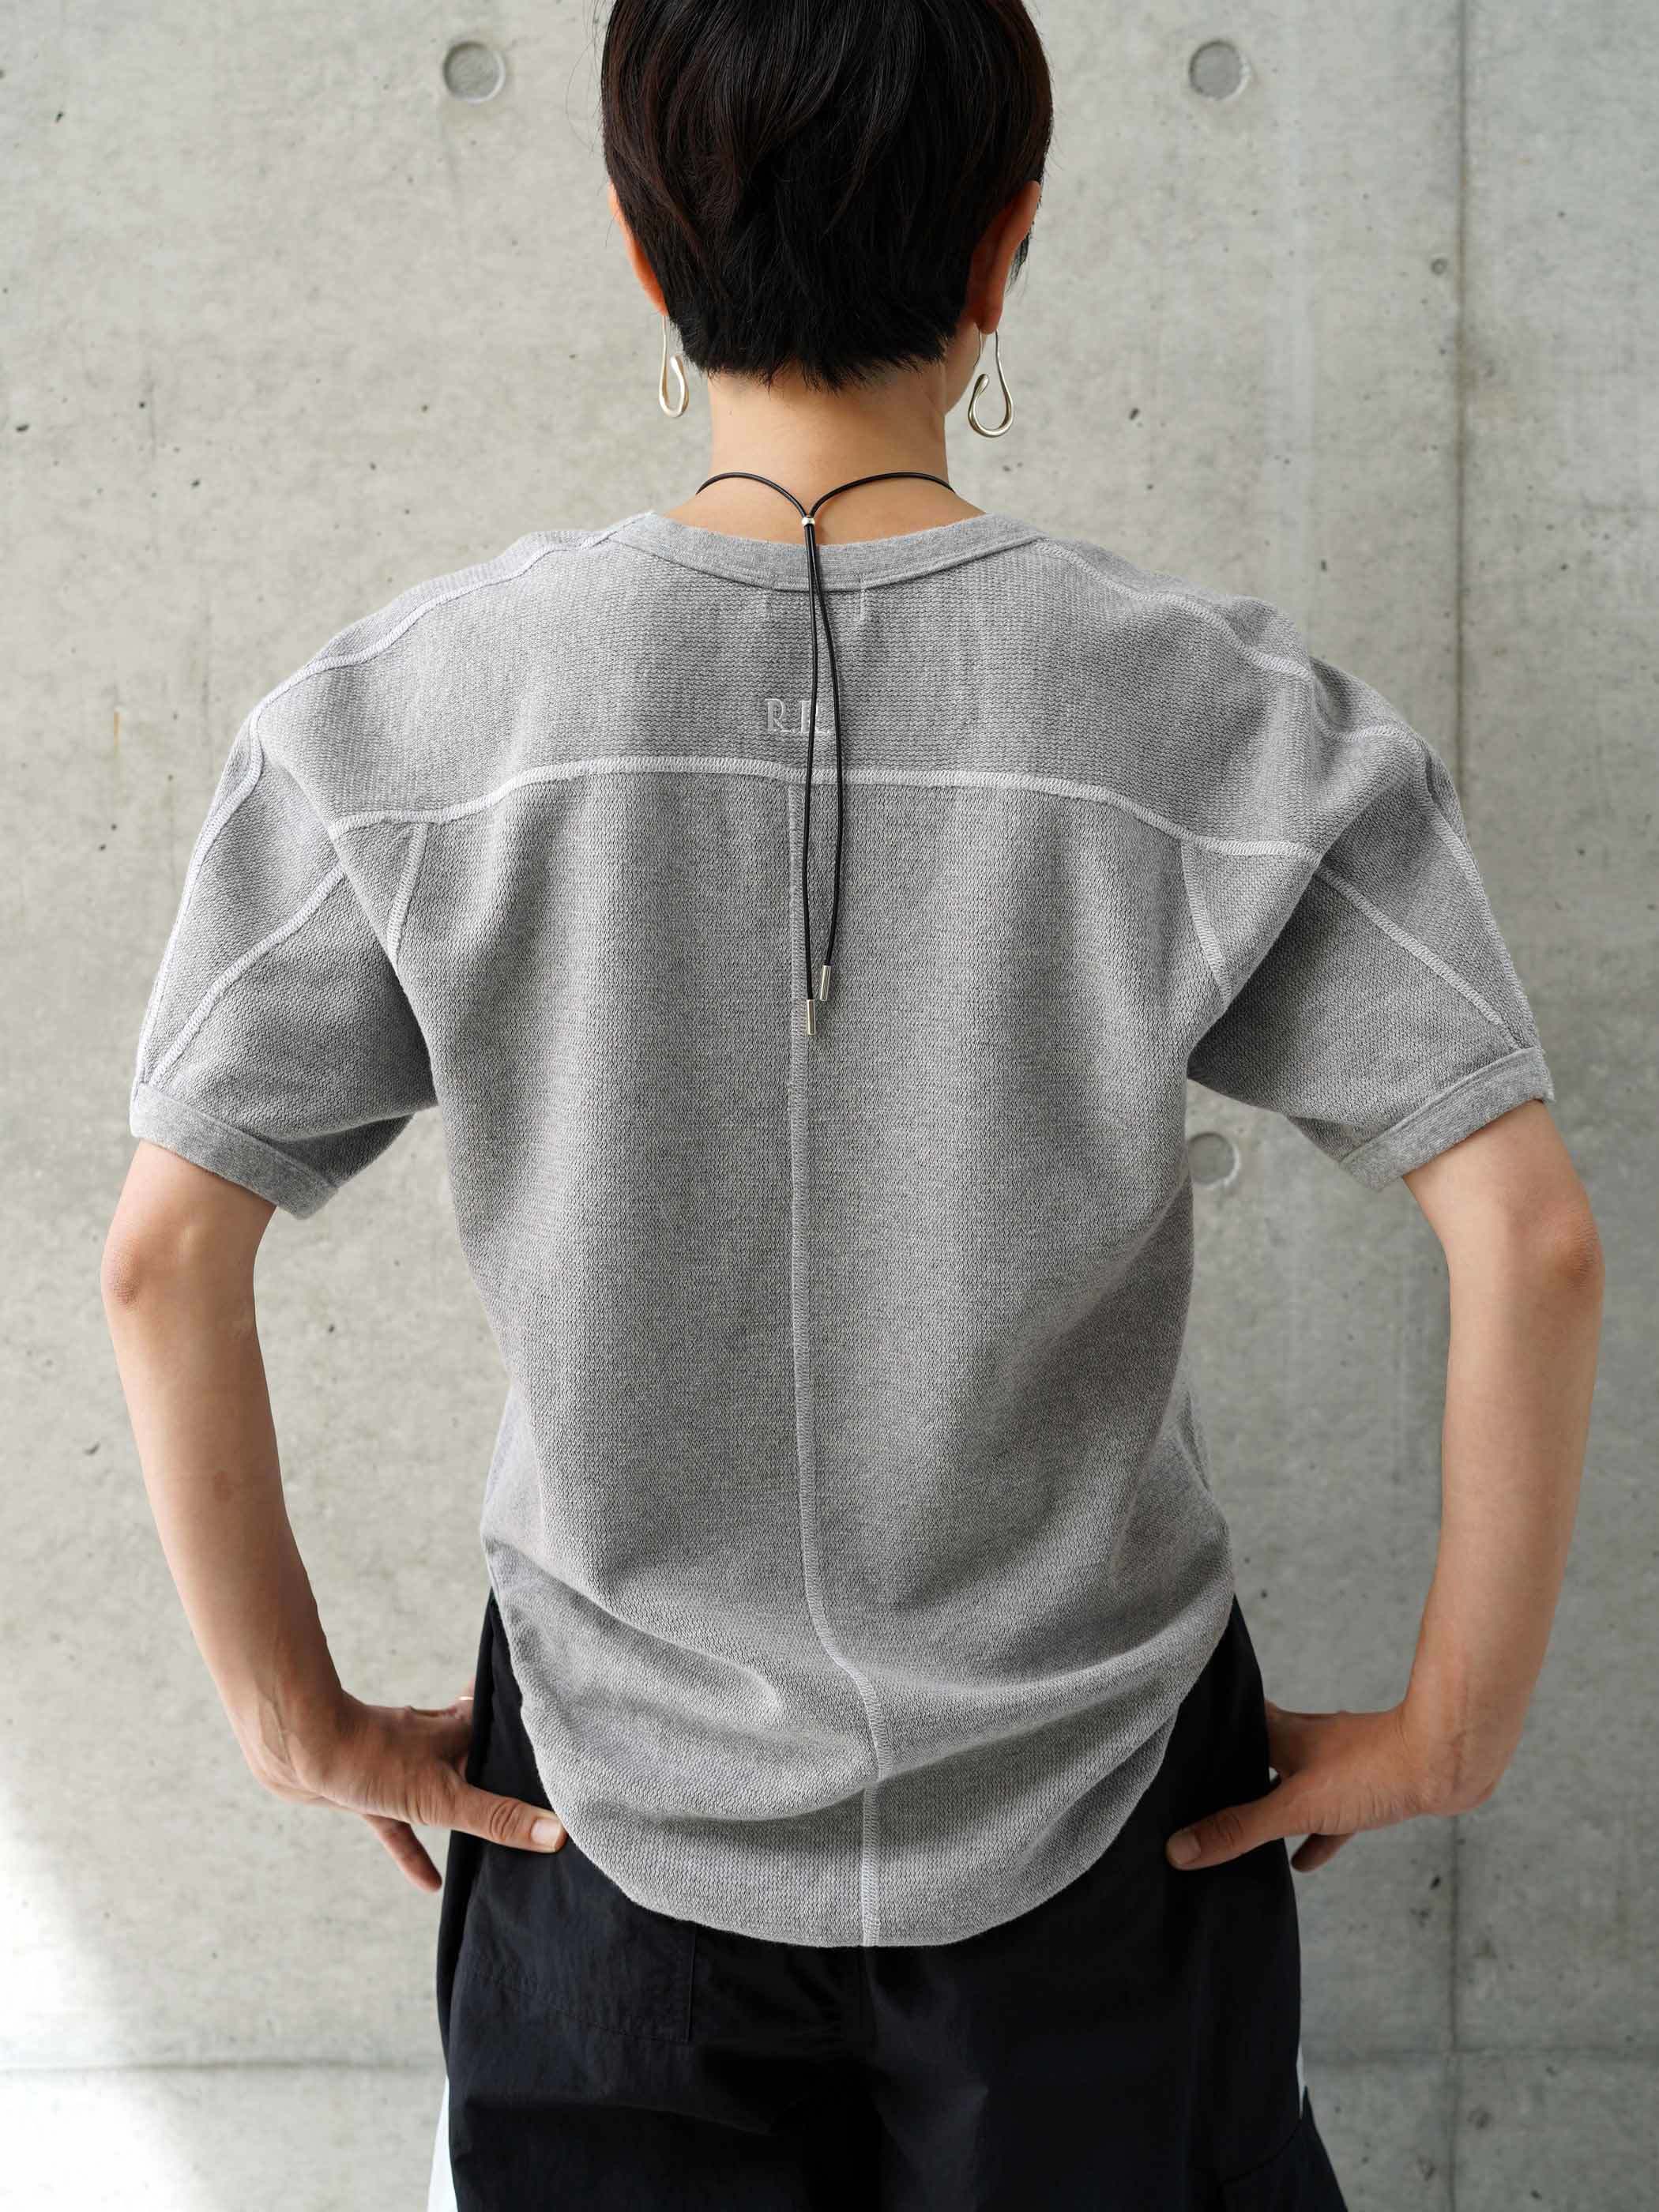 Shoulder Line Thermal Shirts